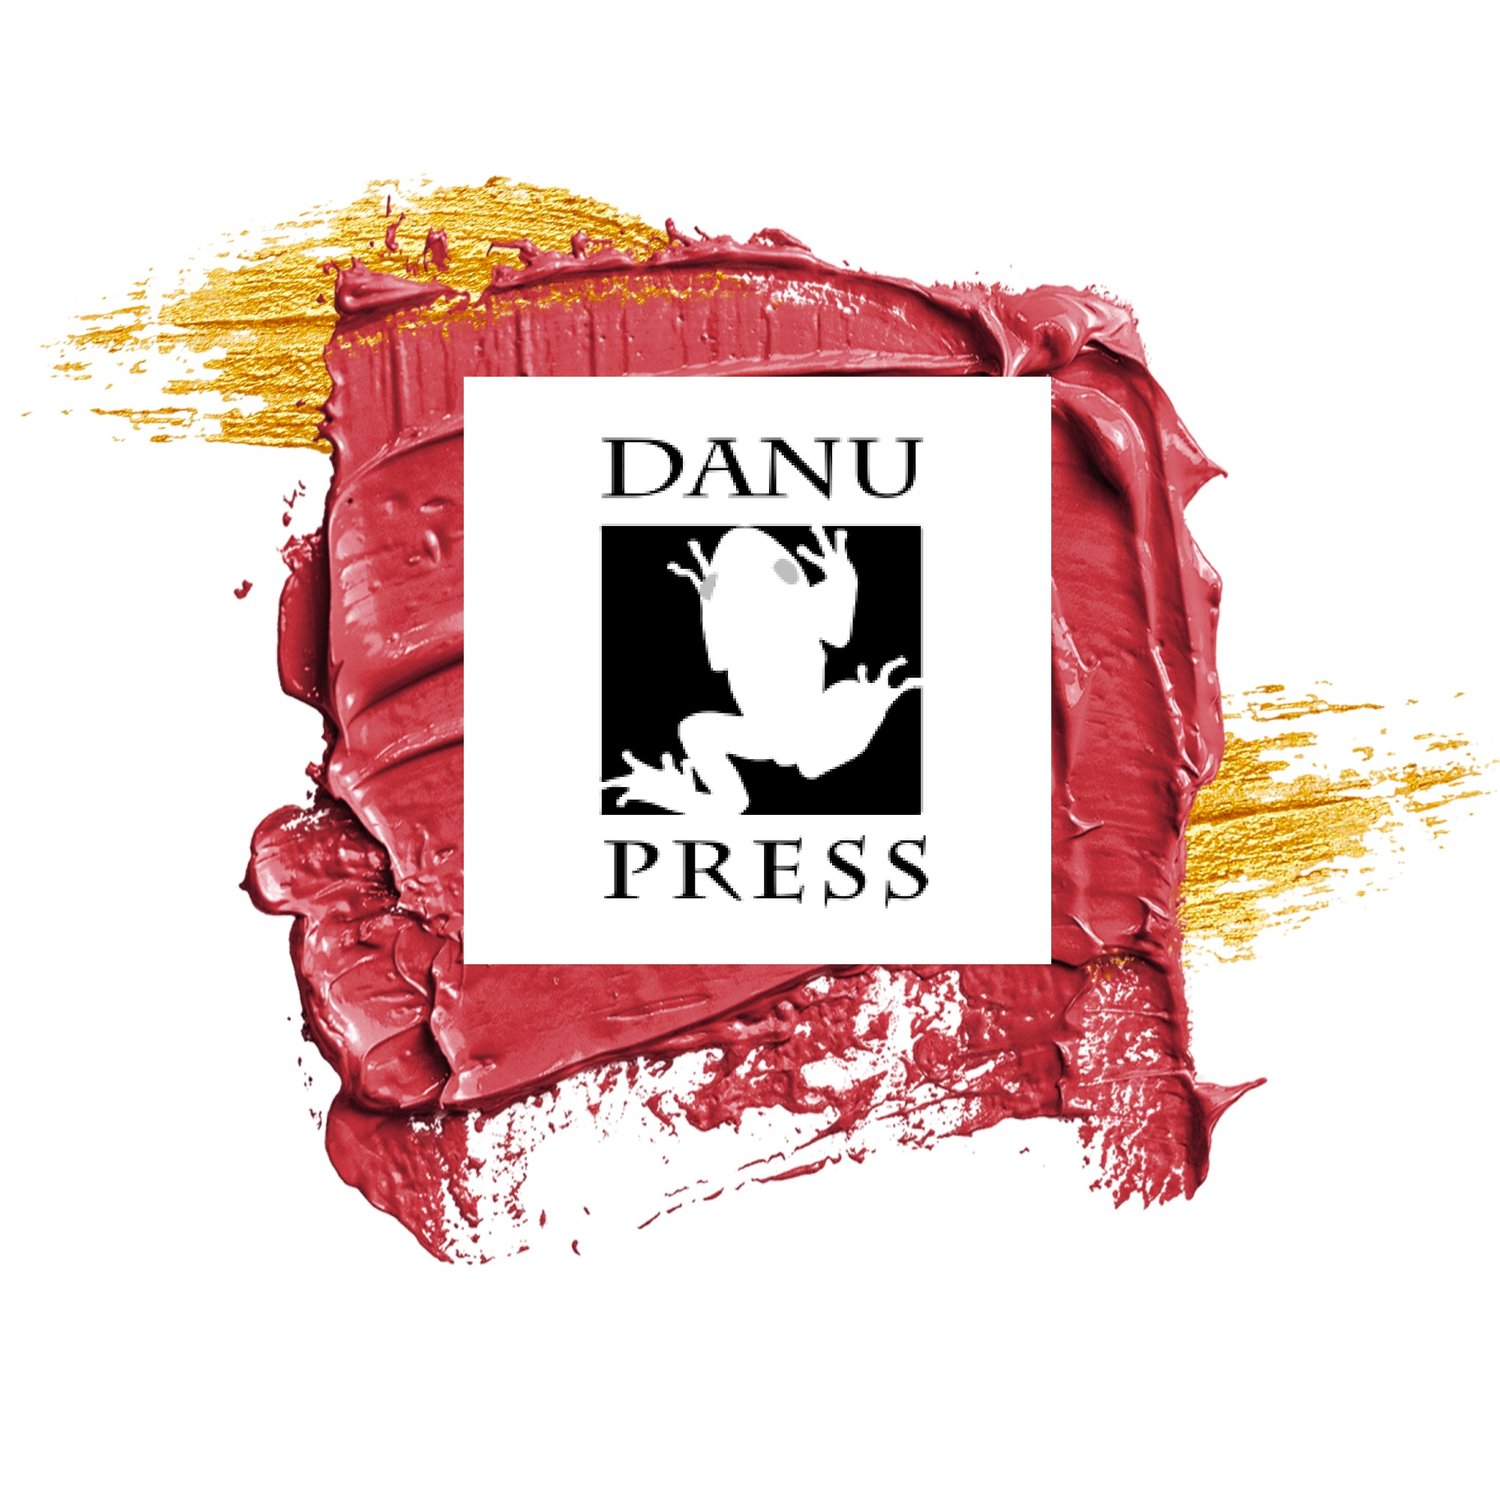 Danu Press